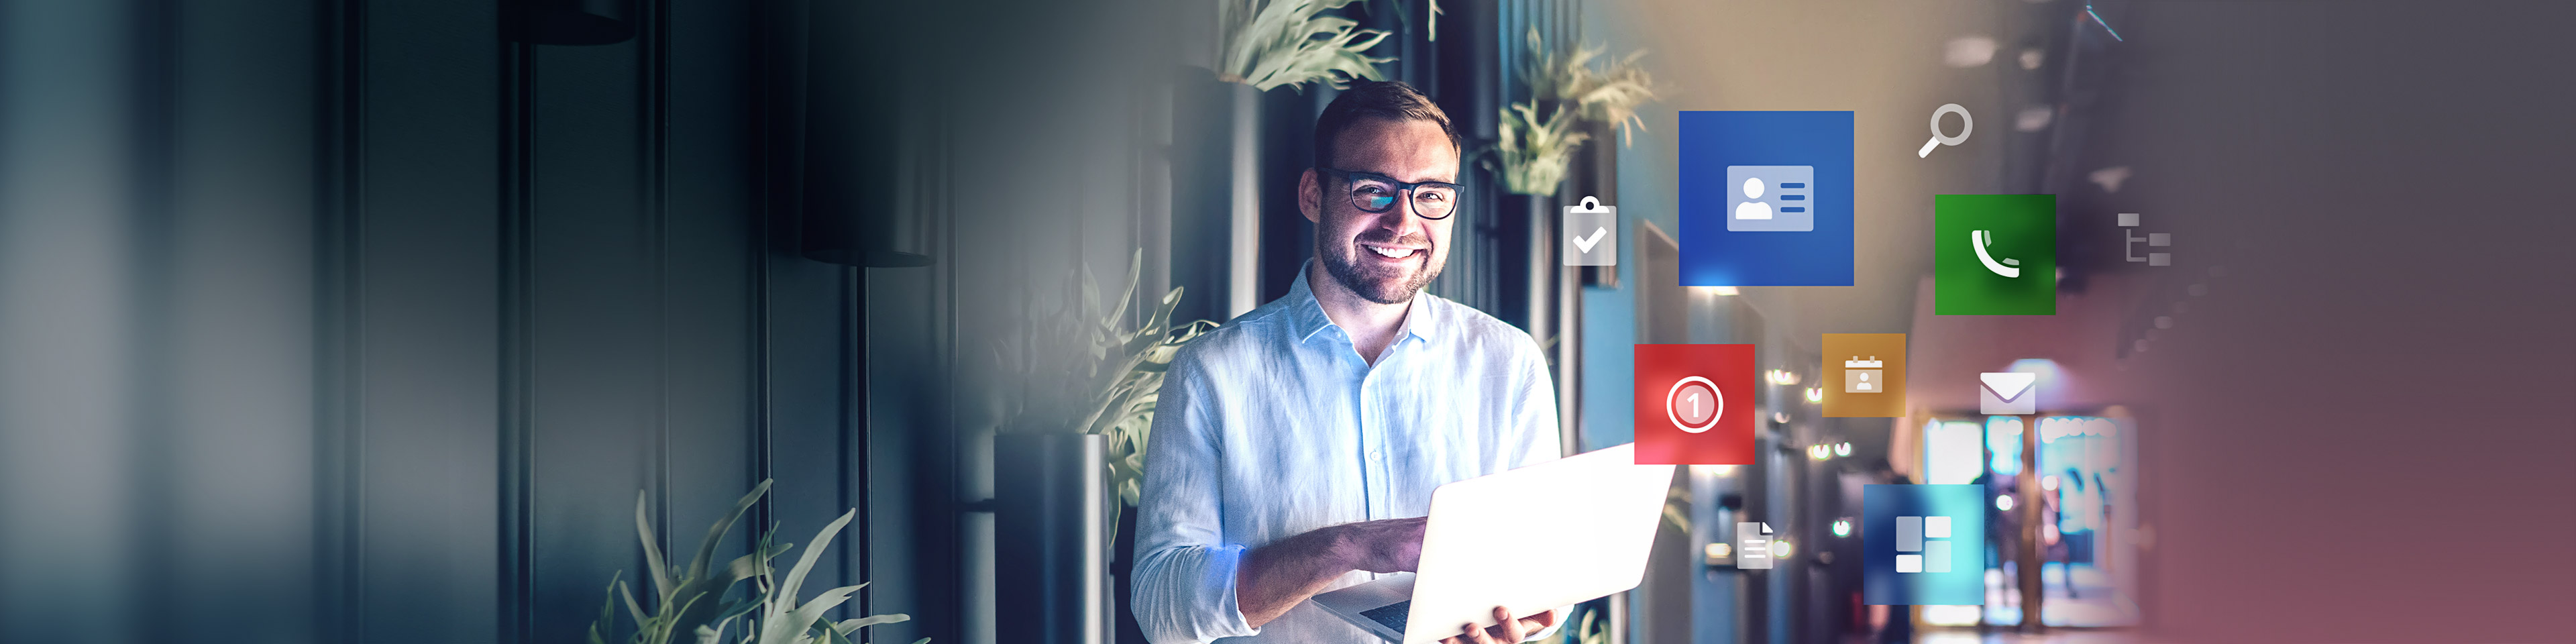 Lächelnder Mann steht mit aufgeklapptem Laptop im modernen Flur eines Bürokomplexes. Rechts neben ihm schweben verschiedene Produkticons in unterschiedlichen Farben und Größen.